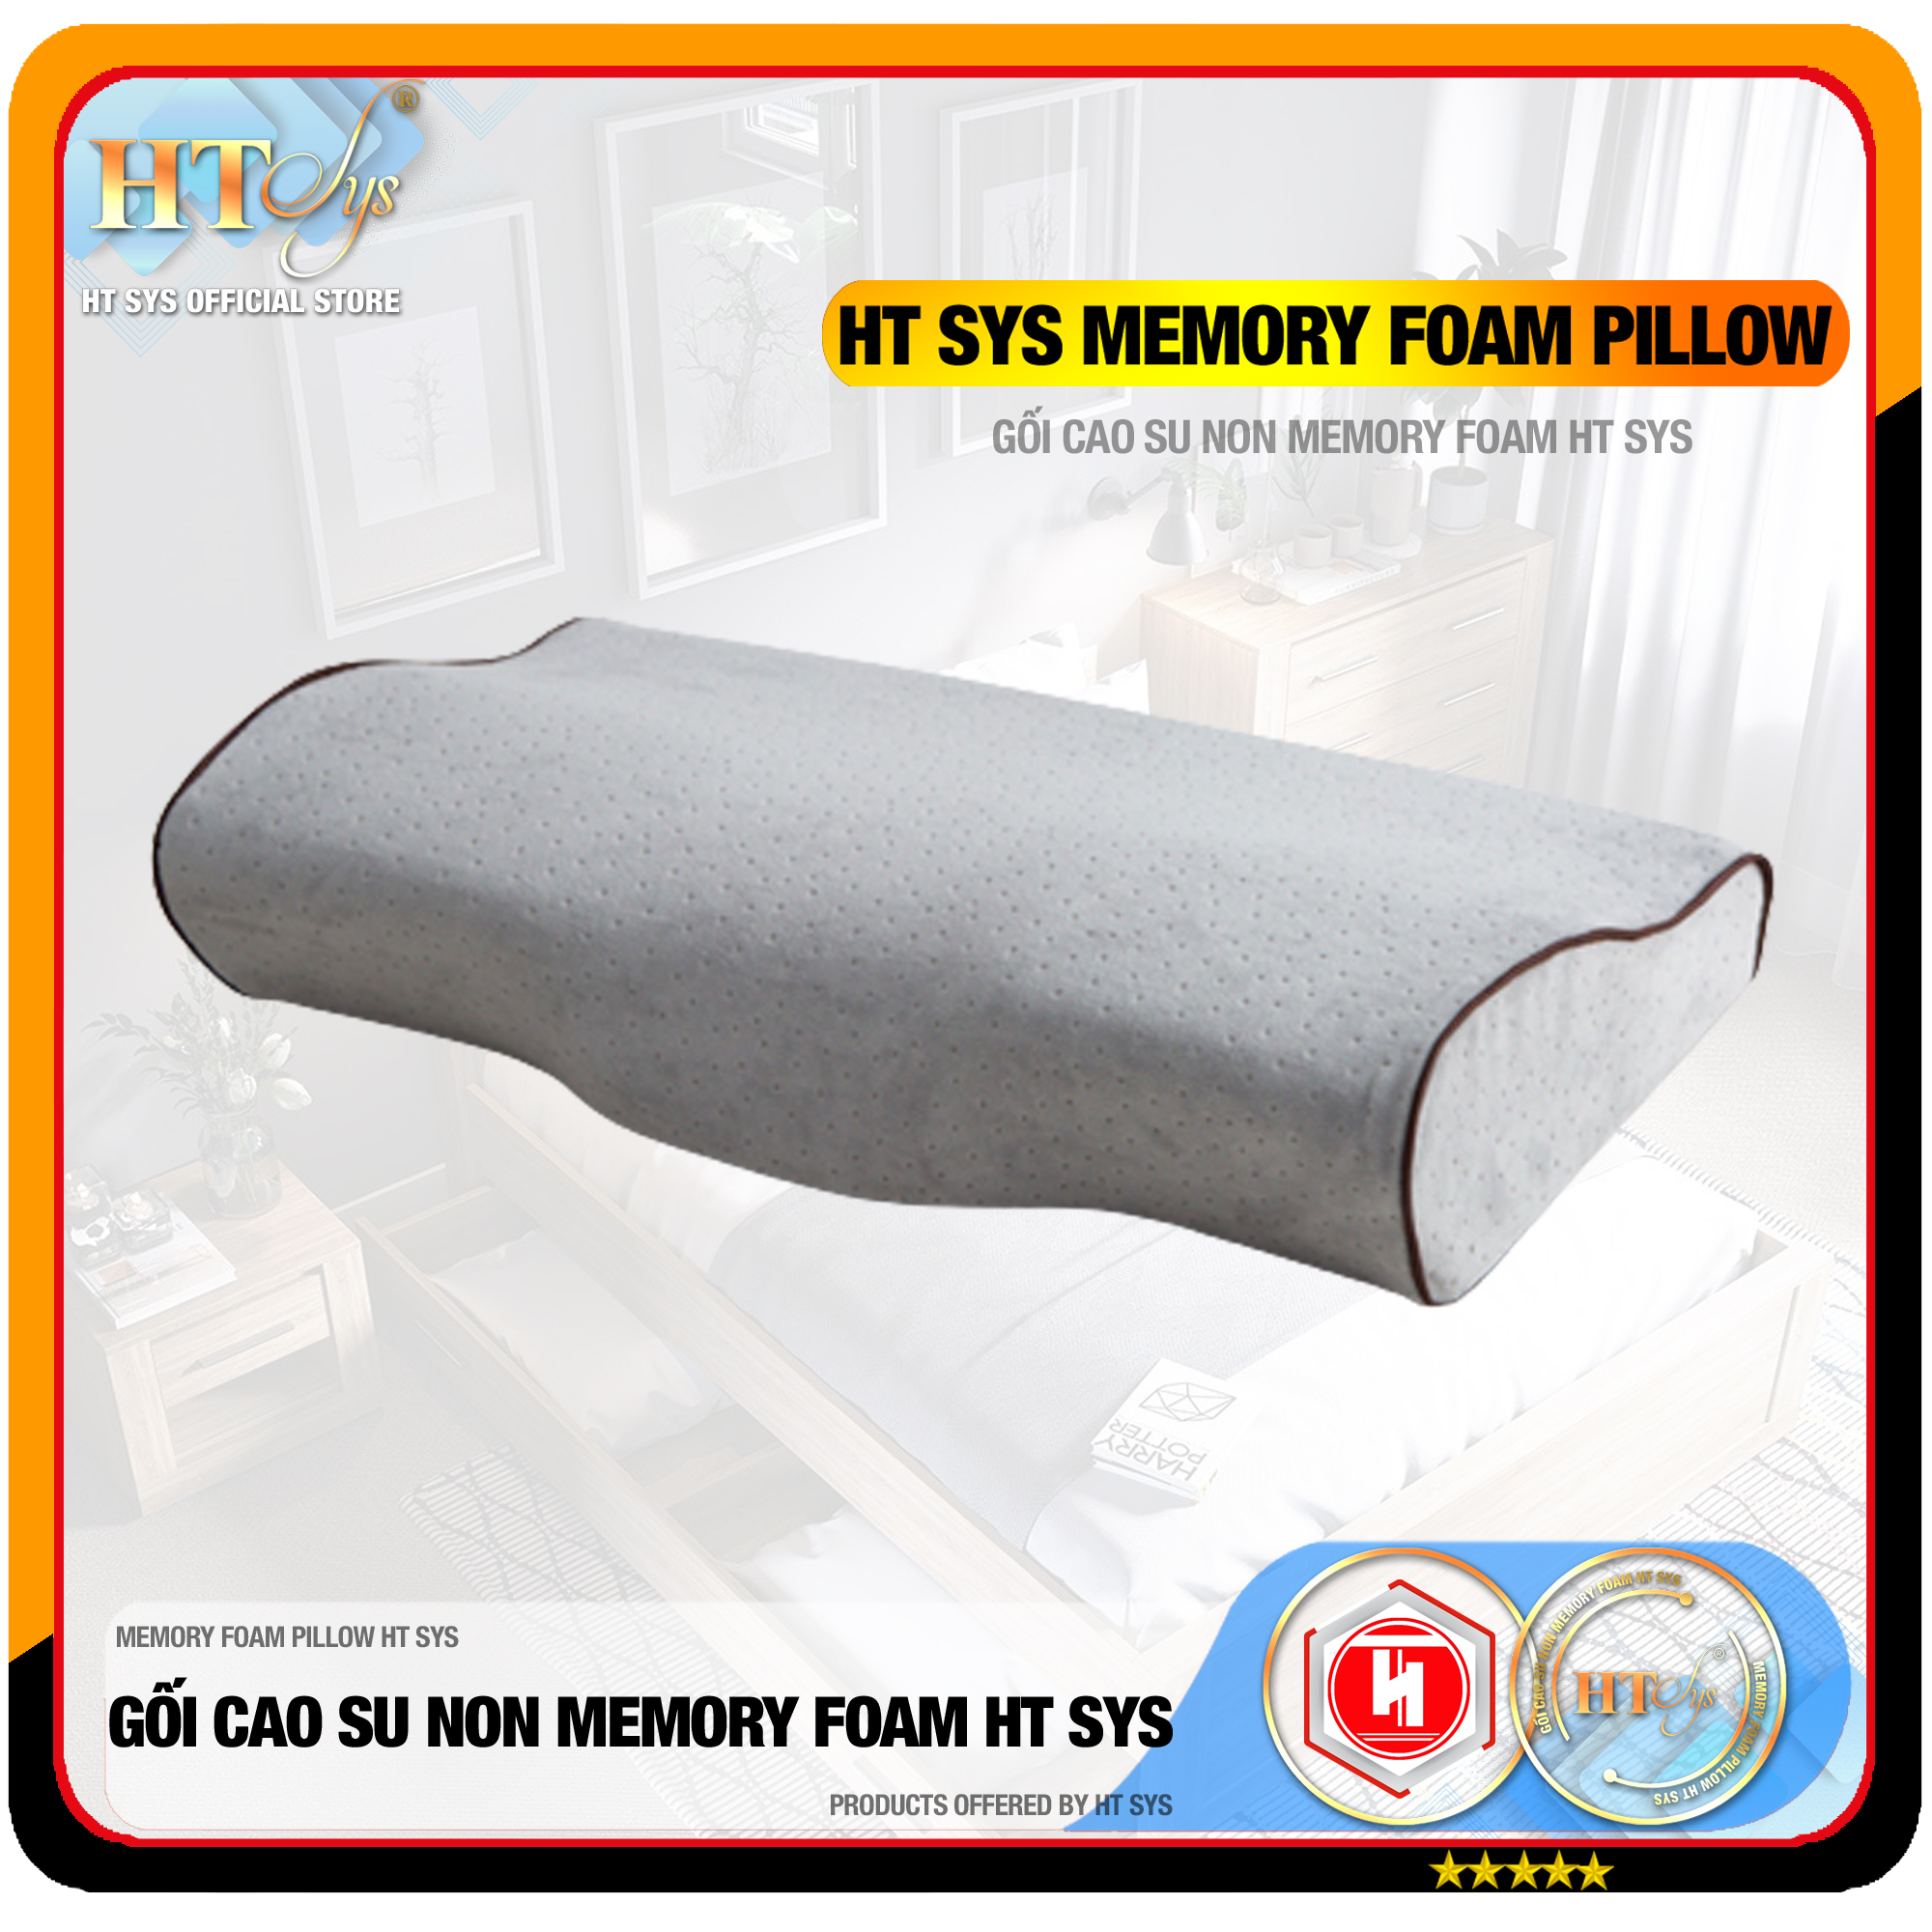 Gối Ngủ Cao Su Non Memory Foam Pillow HT SYS - Vạn Phúc - Gối Ngủ Trị Liệu - 50cmx30cm - Đem đến những giấc mơ tuyệt đẹp